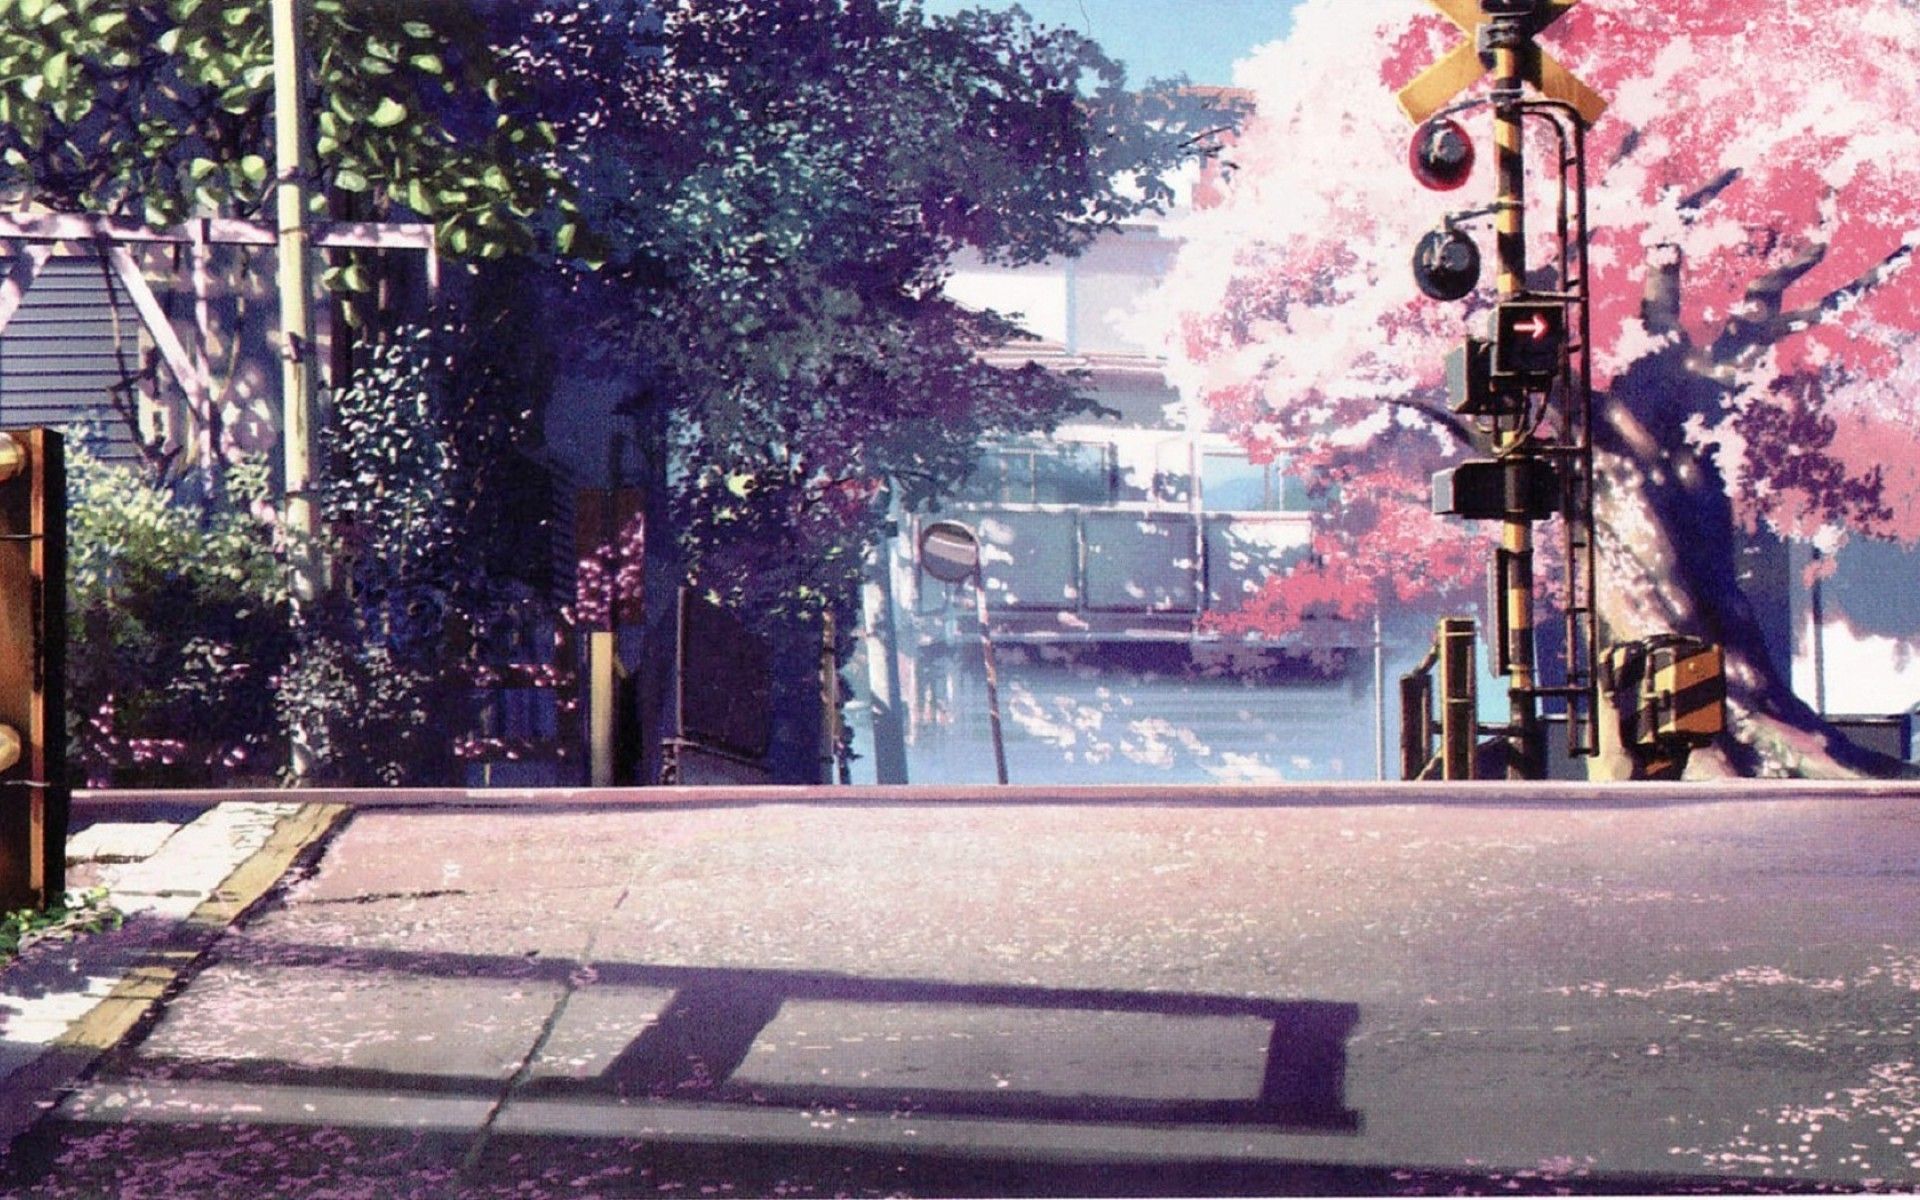 Hình nền phố Anime sẽ đưa bạn vào một thế giới nhập vai đầy màu sắc. Những cánh đồng hoa phượng đỏ rực, những hàng cây lá tán xanh mát đầy tính chất Nhật Bản hay những con đường xoay nhưng đậm chất truyện tranh, sẽ mang tới cho bạn nhiều trải nghiệm thú vị lãng mạng.